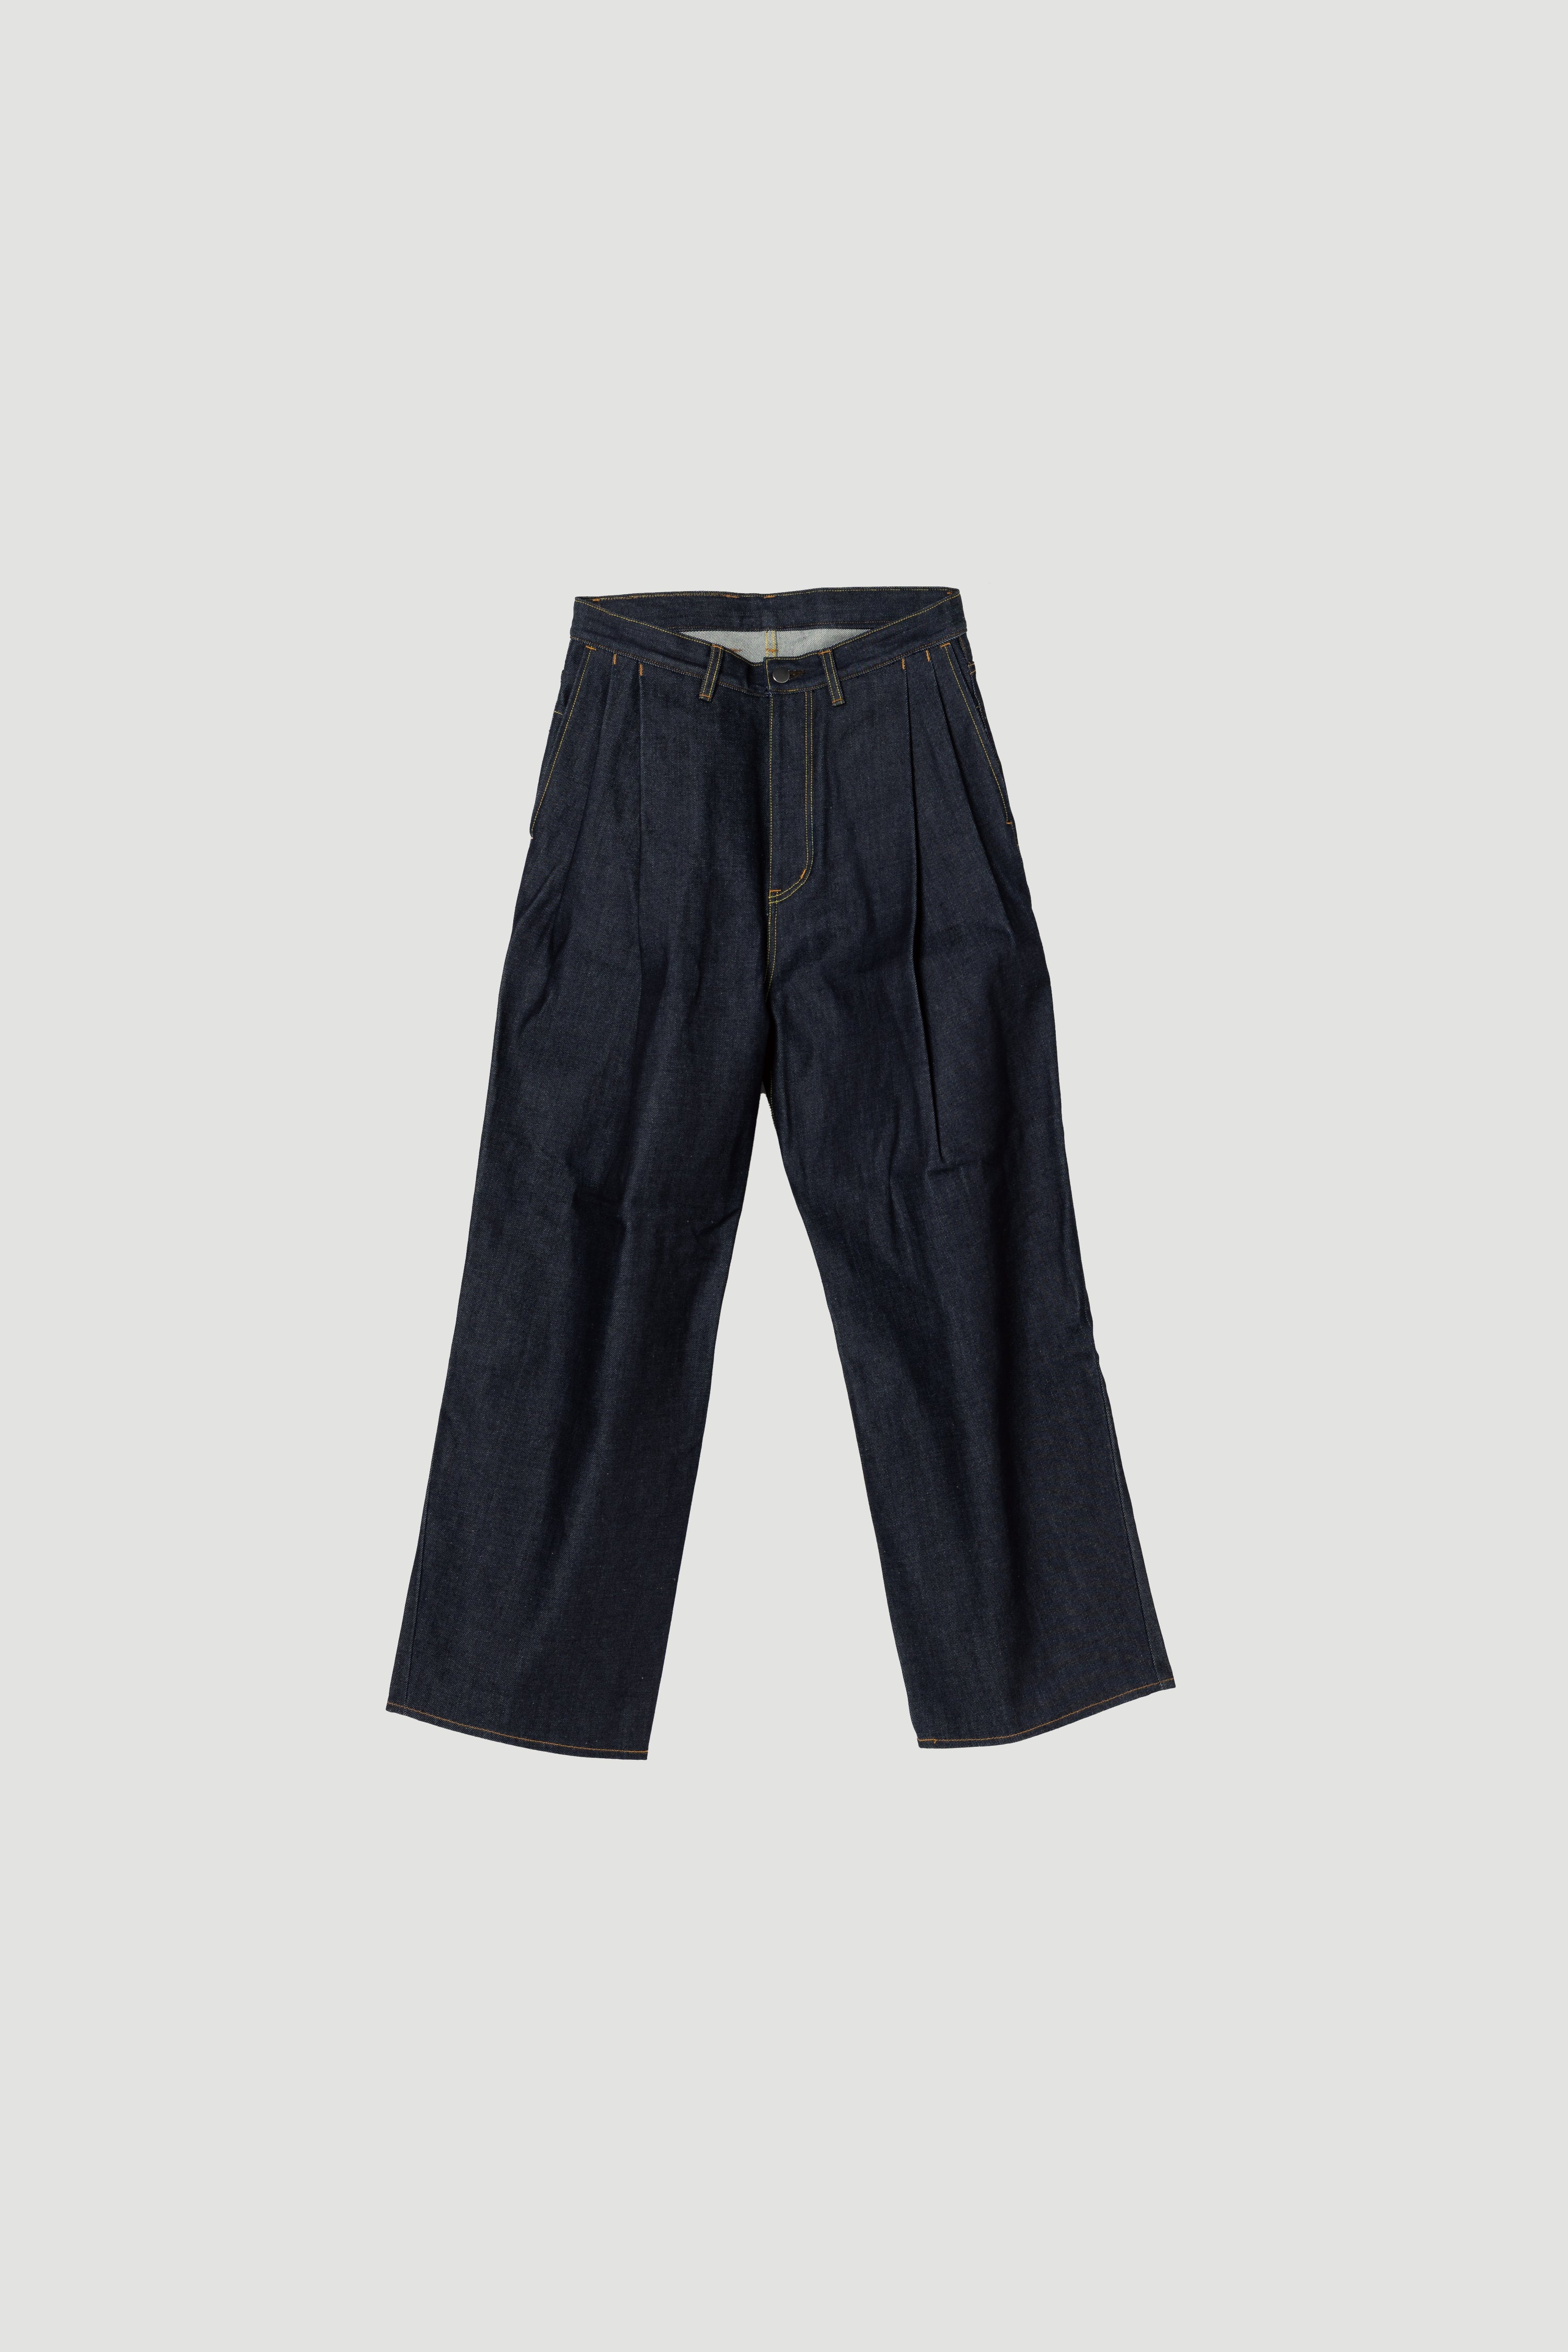 【美品】sublations 2tuck wide denim pants裾幅約25cm